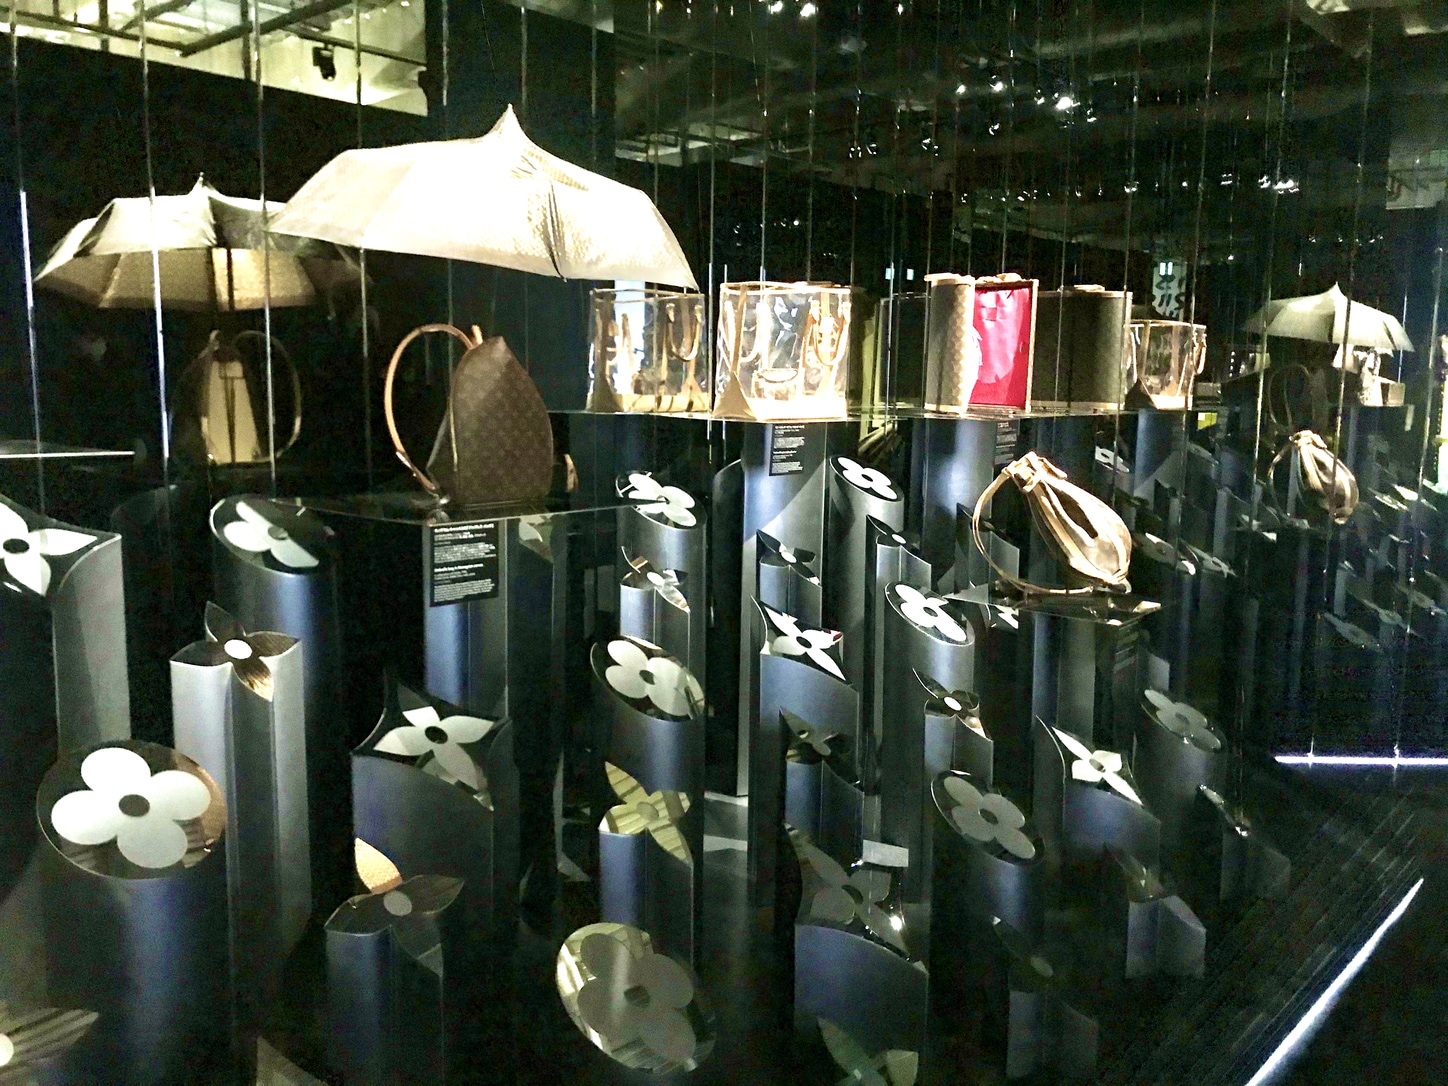 Louis Vuitton Spring 2021 in Tokyo - New Facade and a Special Exhibition